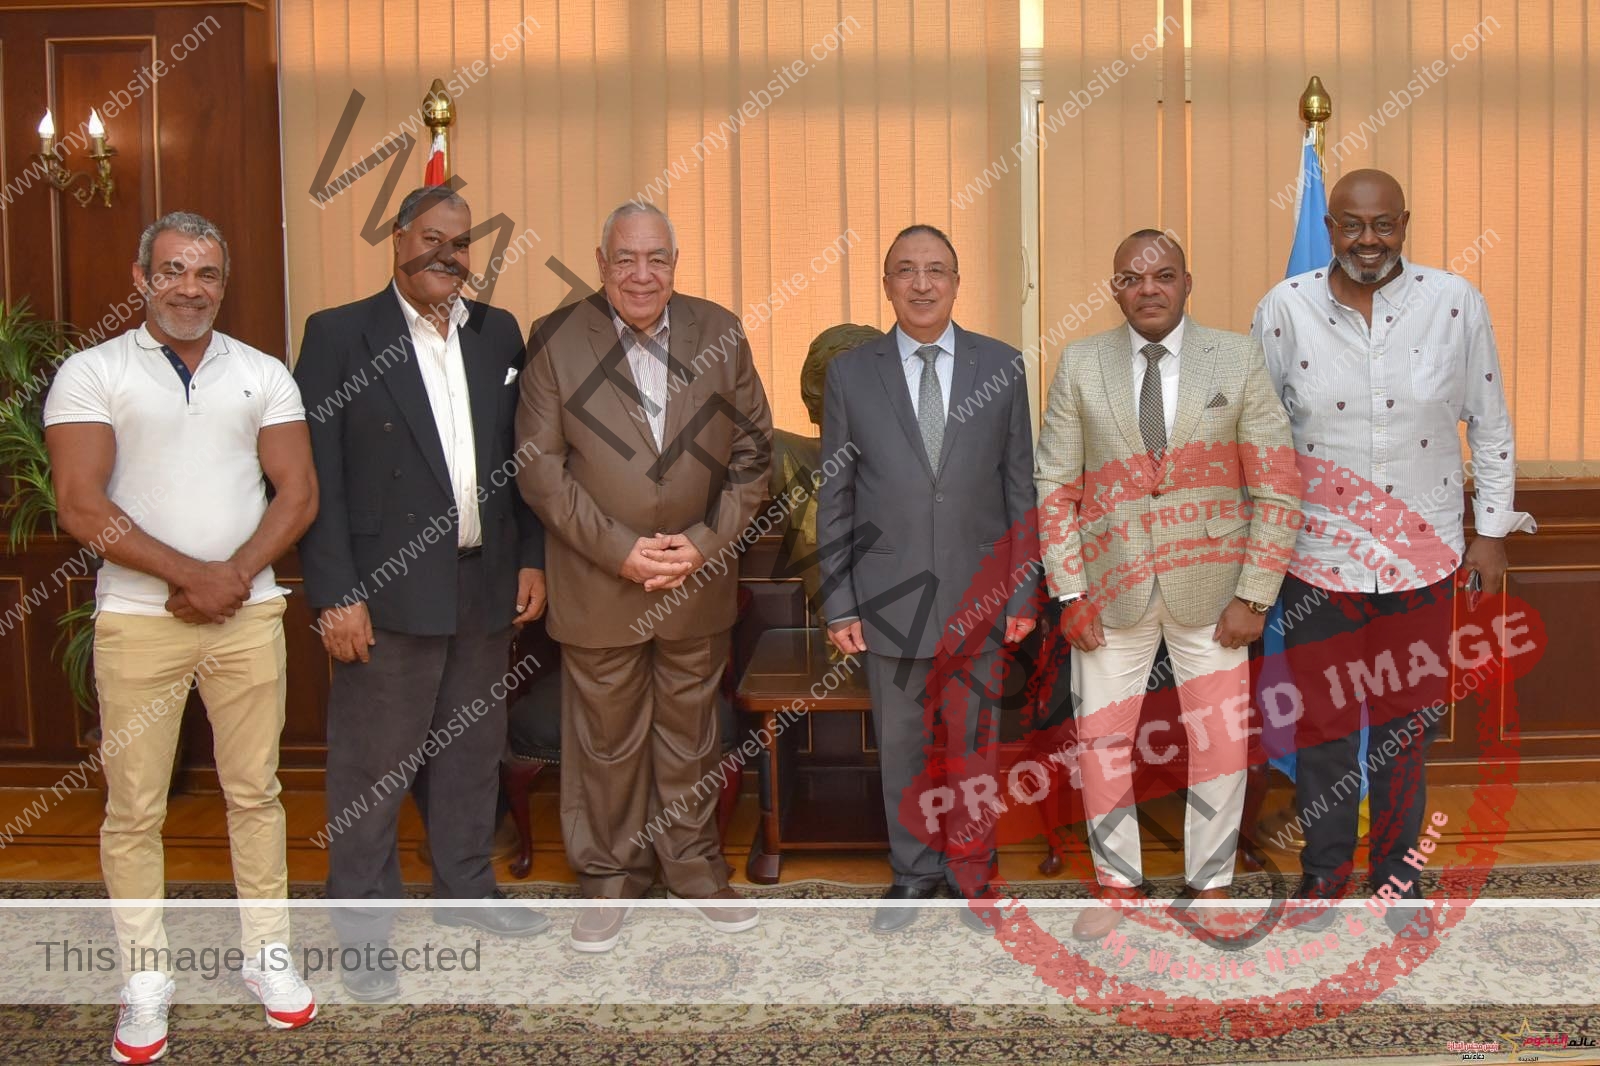 محافظ الإسكندرية يستقبل رئيس اتحاد كمال الأجسام لمناقشة استعدادات إقامة البطولة العربية 2023